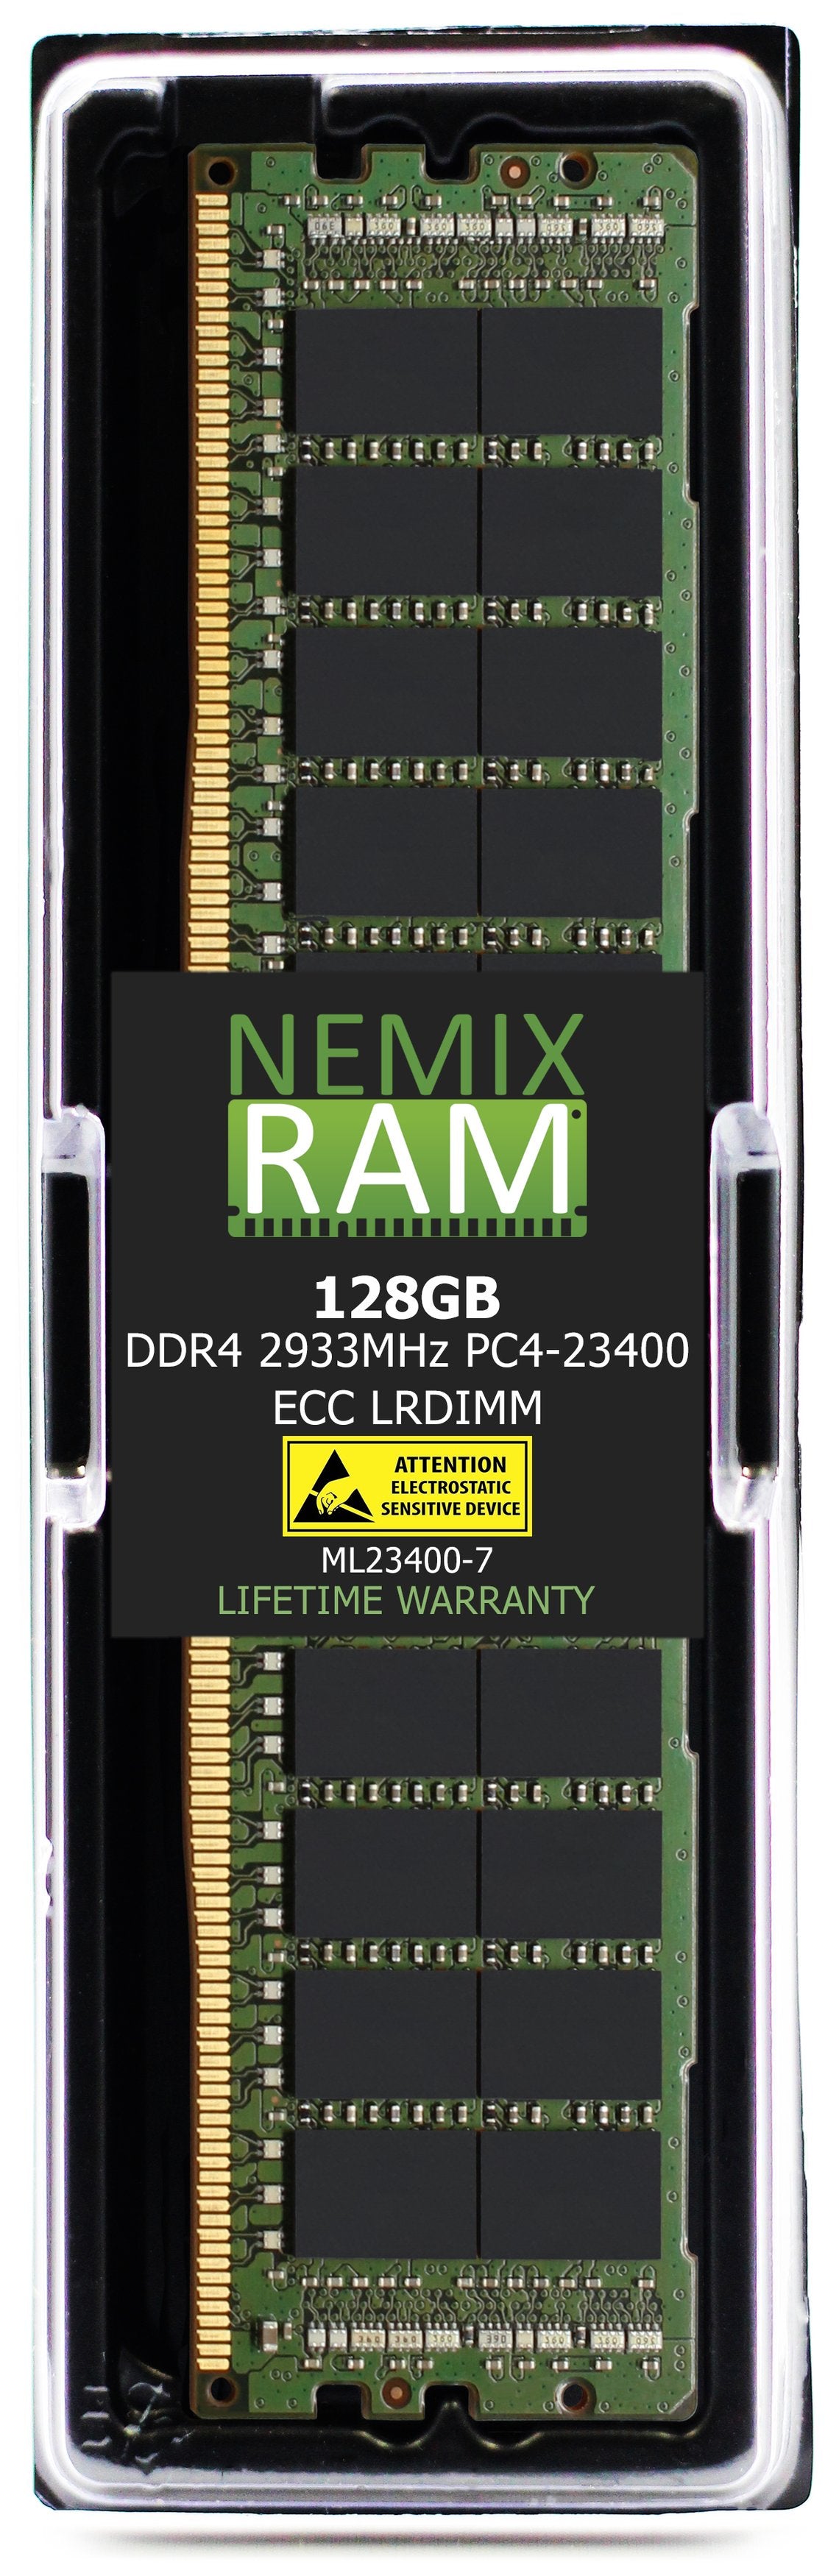 128GB DDR4 2933MHZ PC4-23400 LRDIMM Compatible with Supermicro MEM-DR412L-SL01-LR29